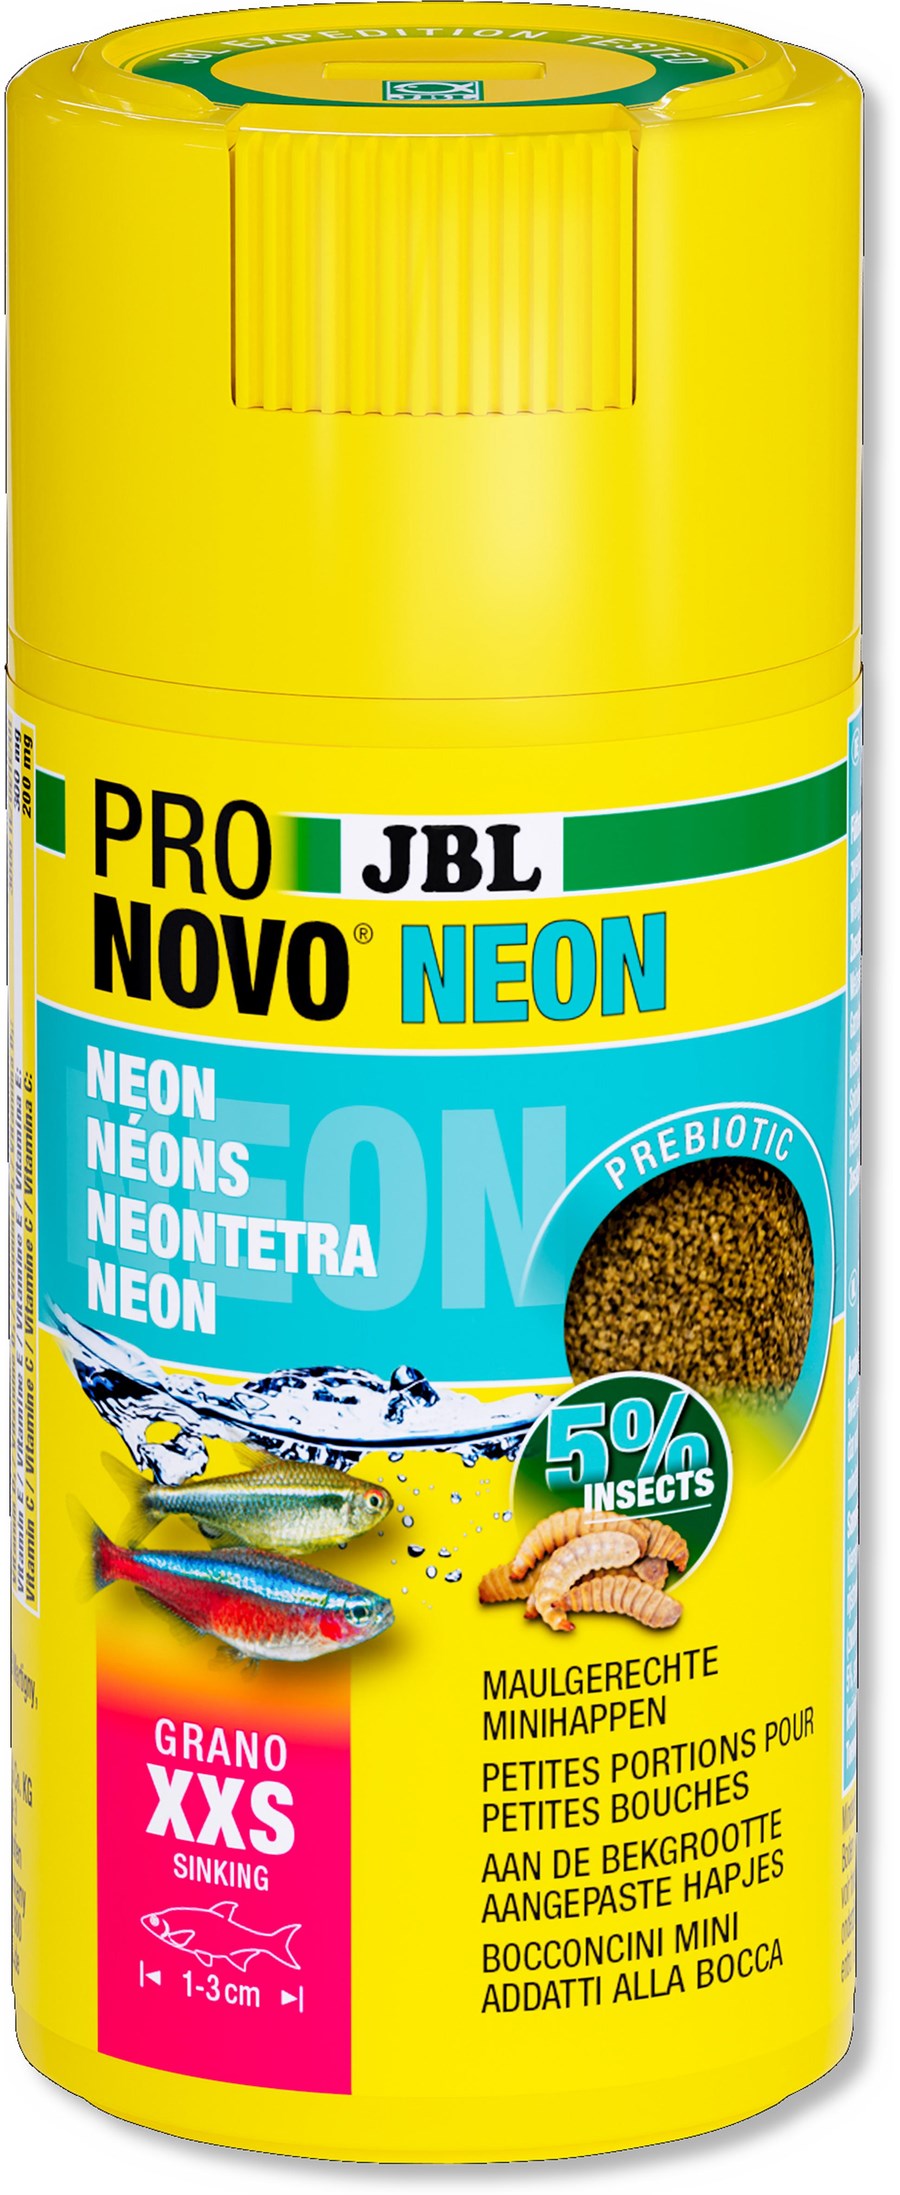 JBL PRONOVO NEON GRANO XXS 100ml CLICK